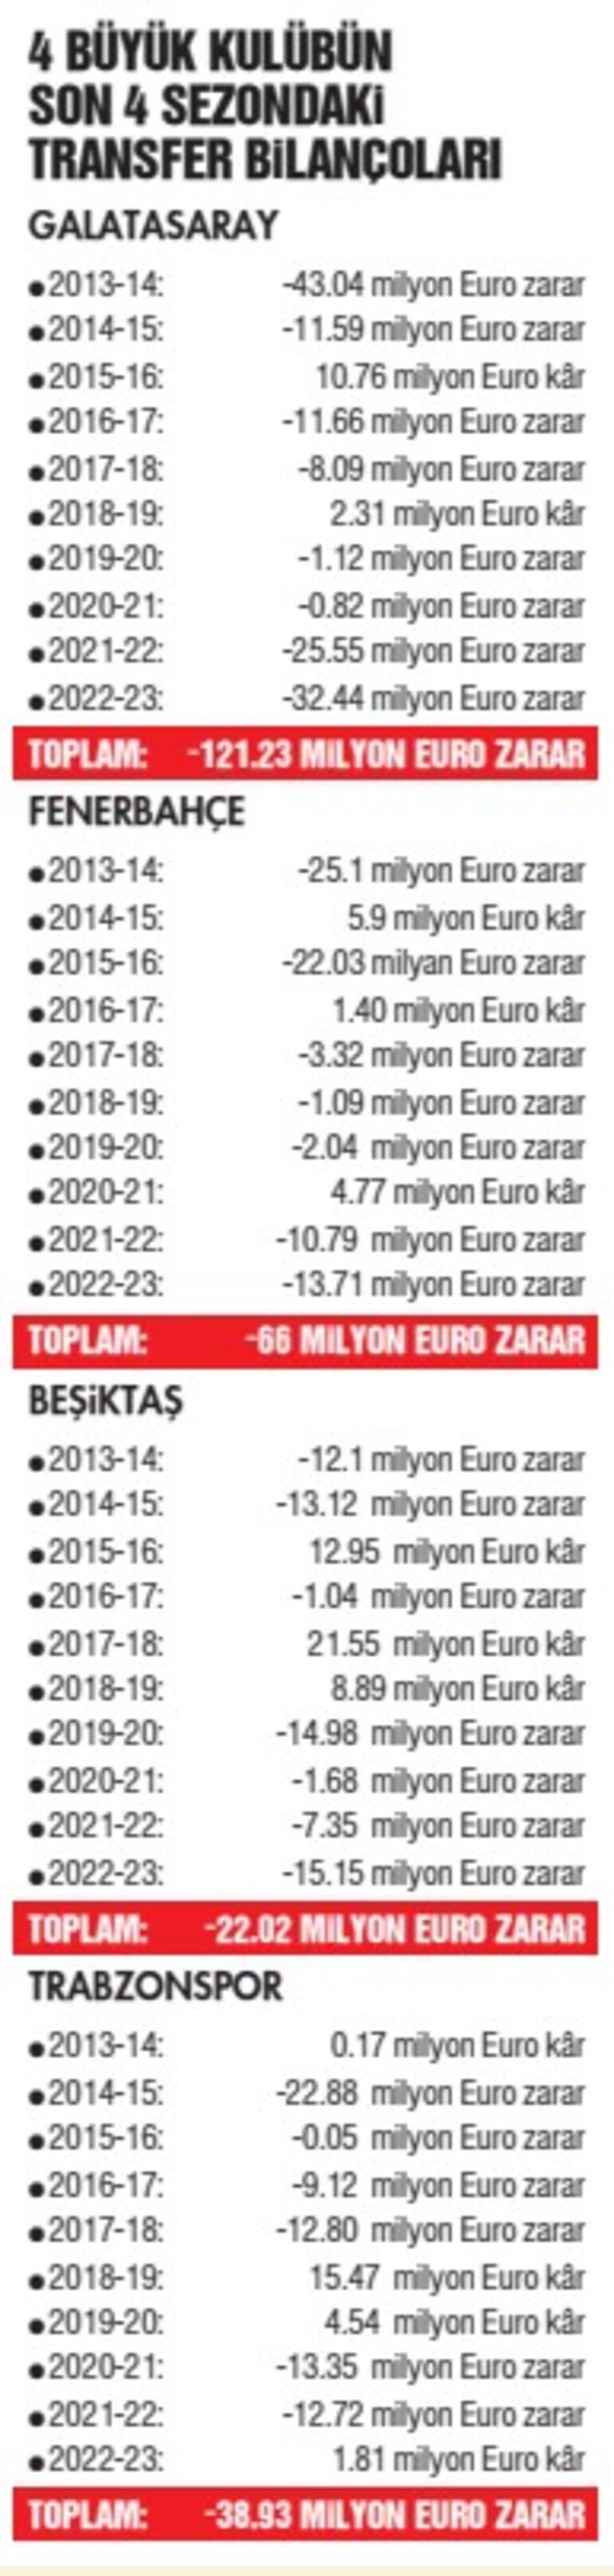 4 büyüklerin son 10 sezondaki transfer zararı 238 milyon euro